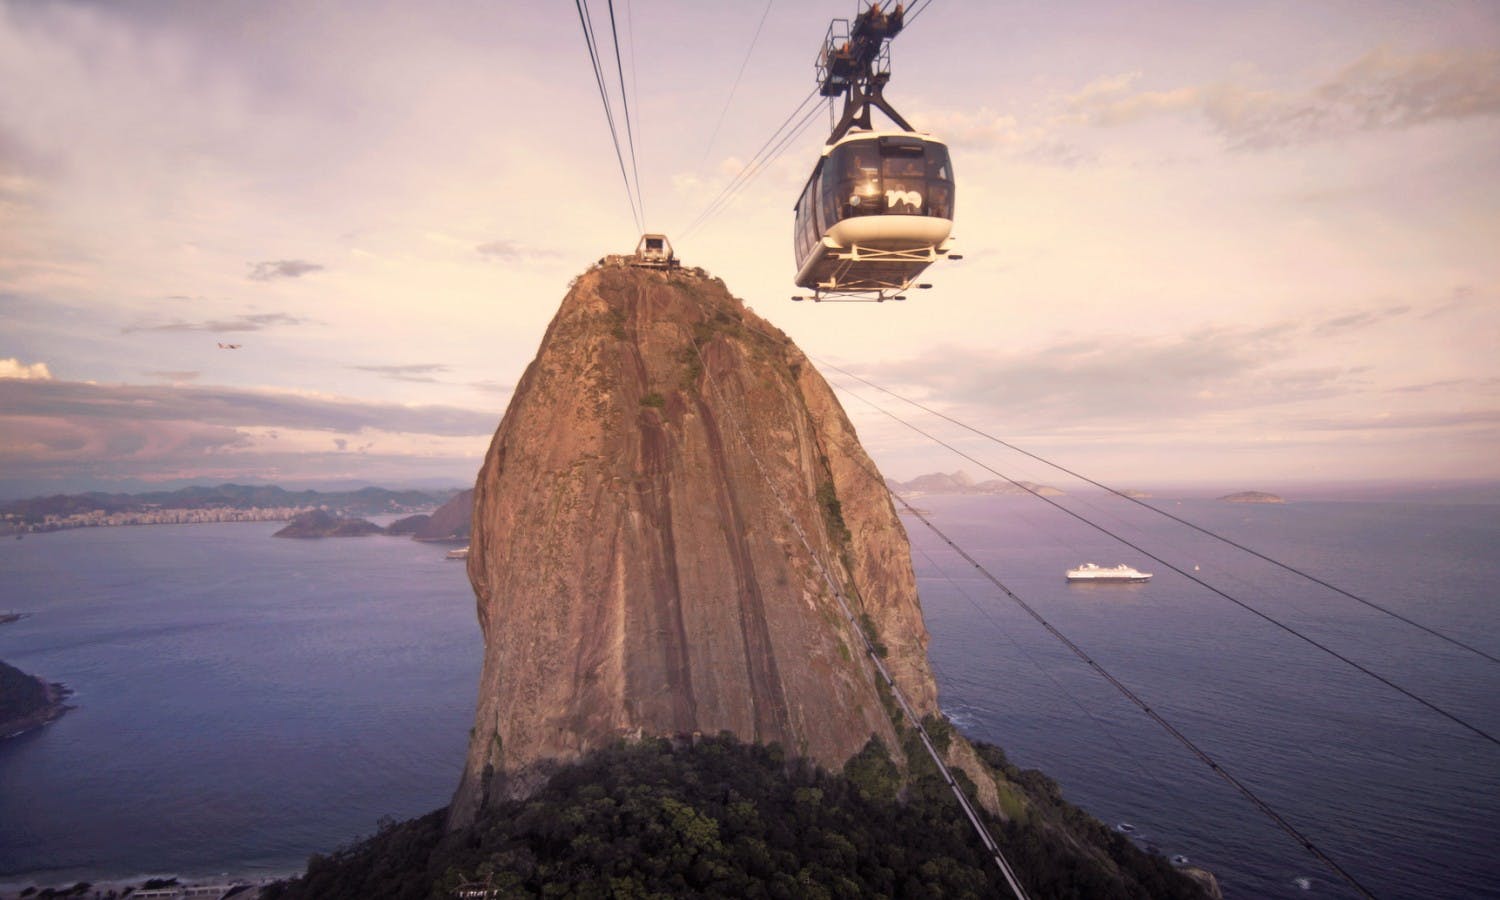 Tour da cidade de Sugar Loaf e teleférico do Rio